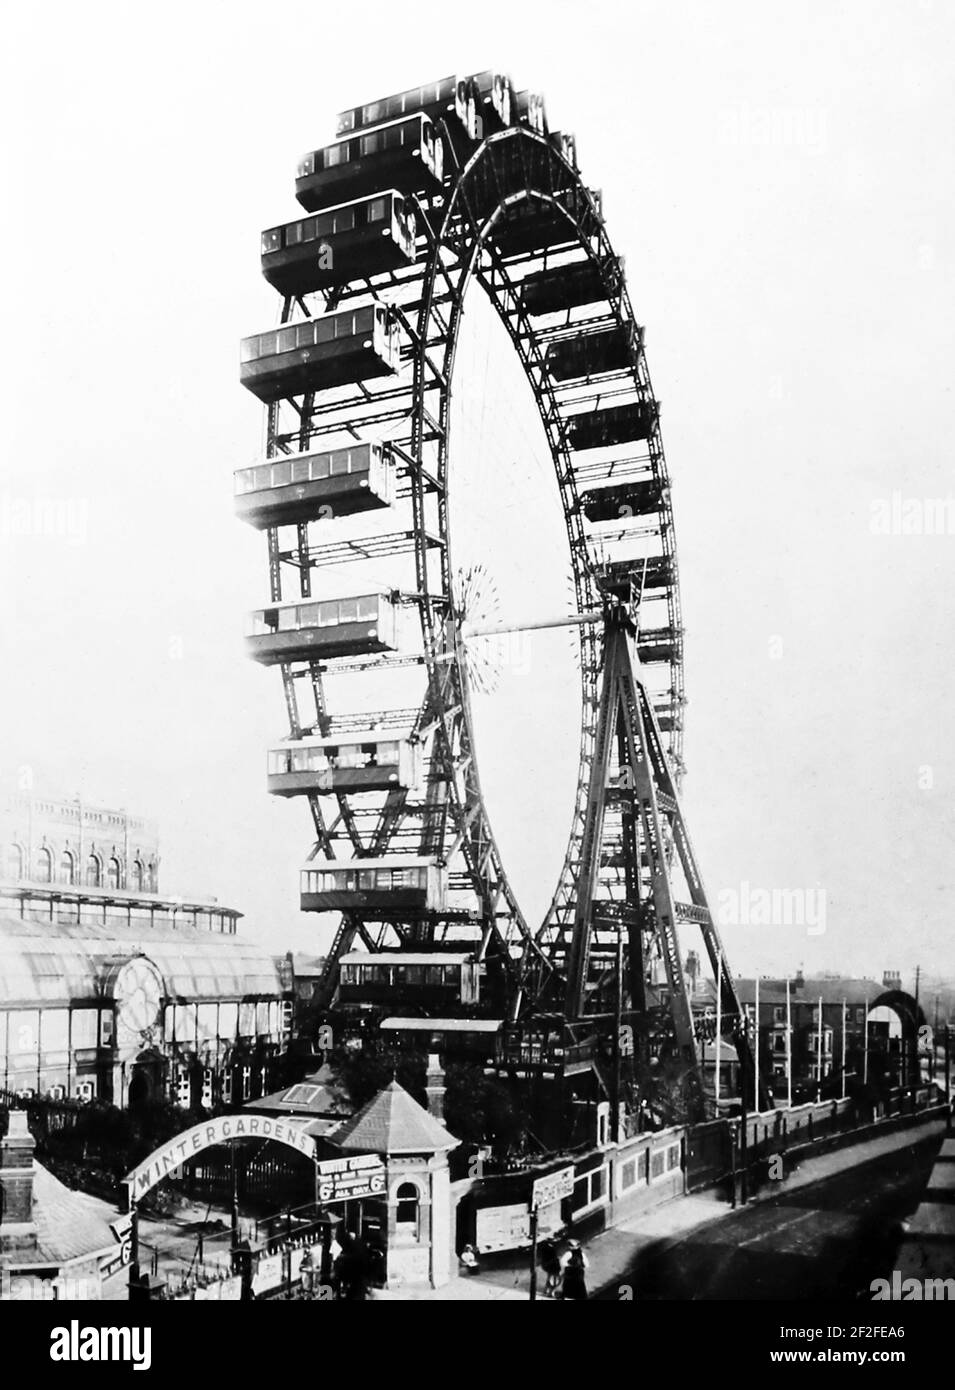 La Grande roue, Blackpool, probablement à la fin des années 1890 Banque D'Images